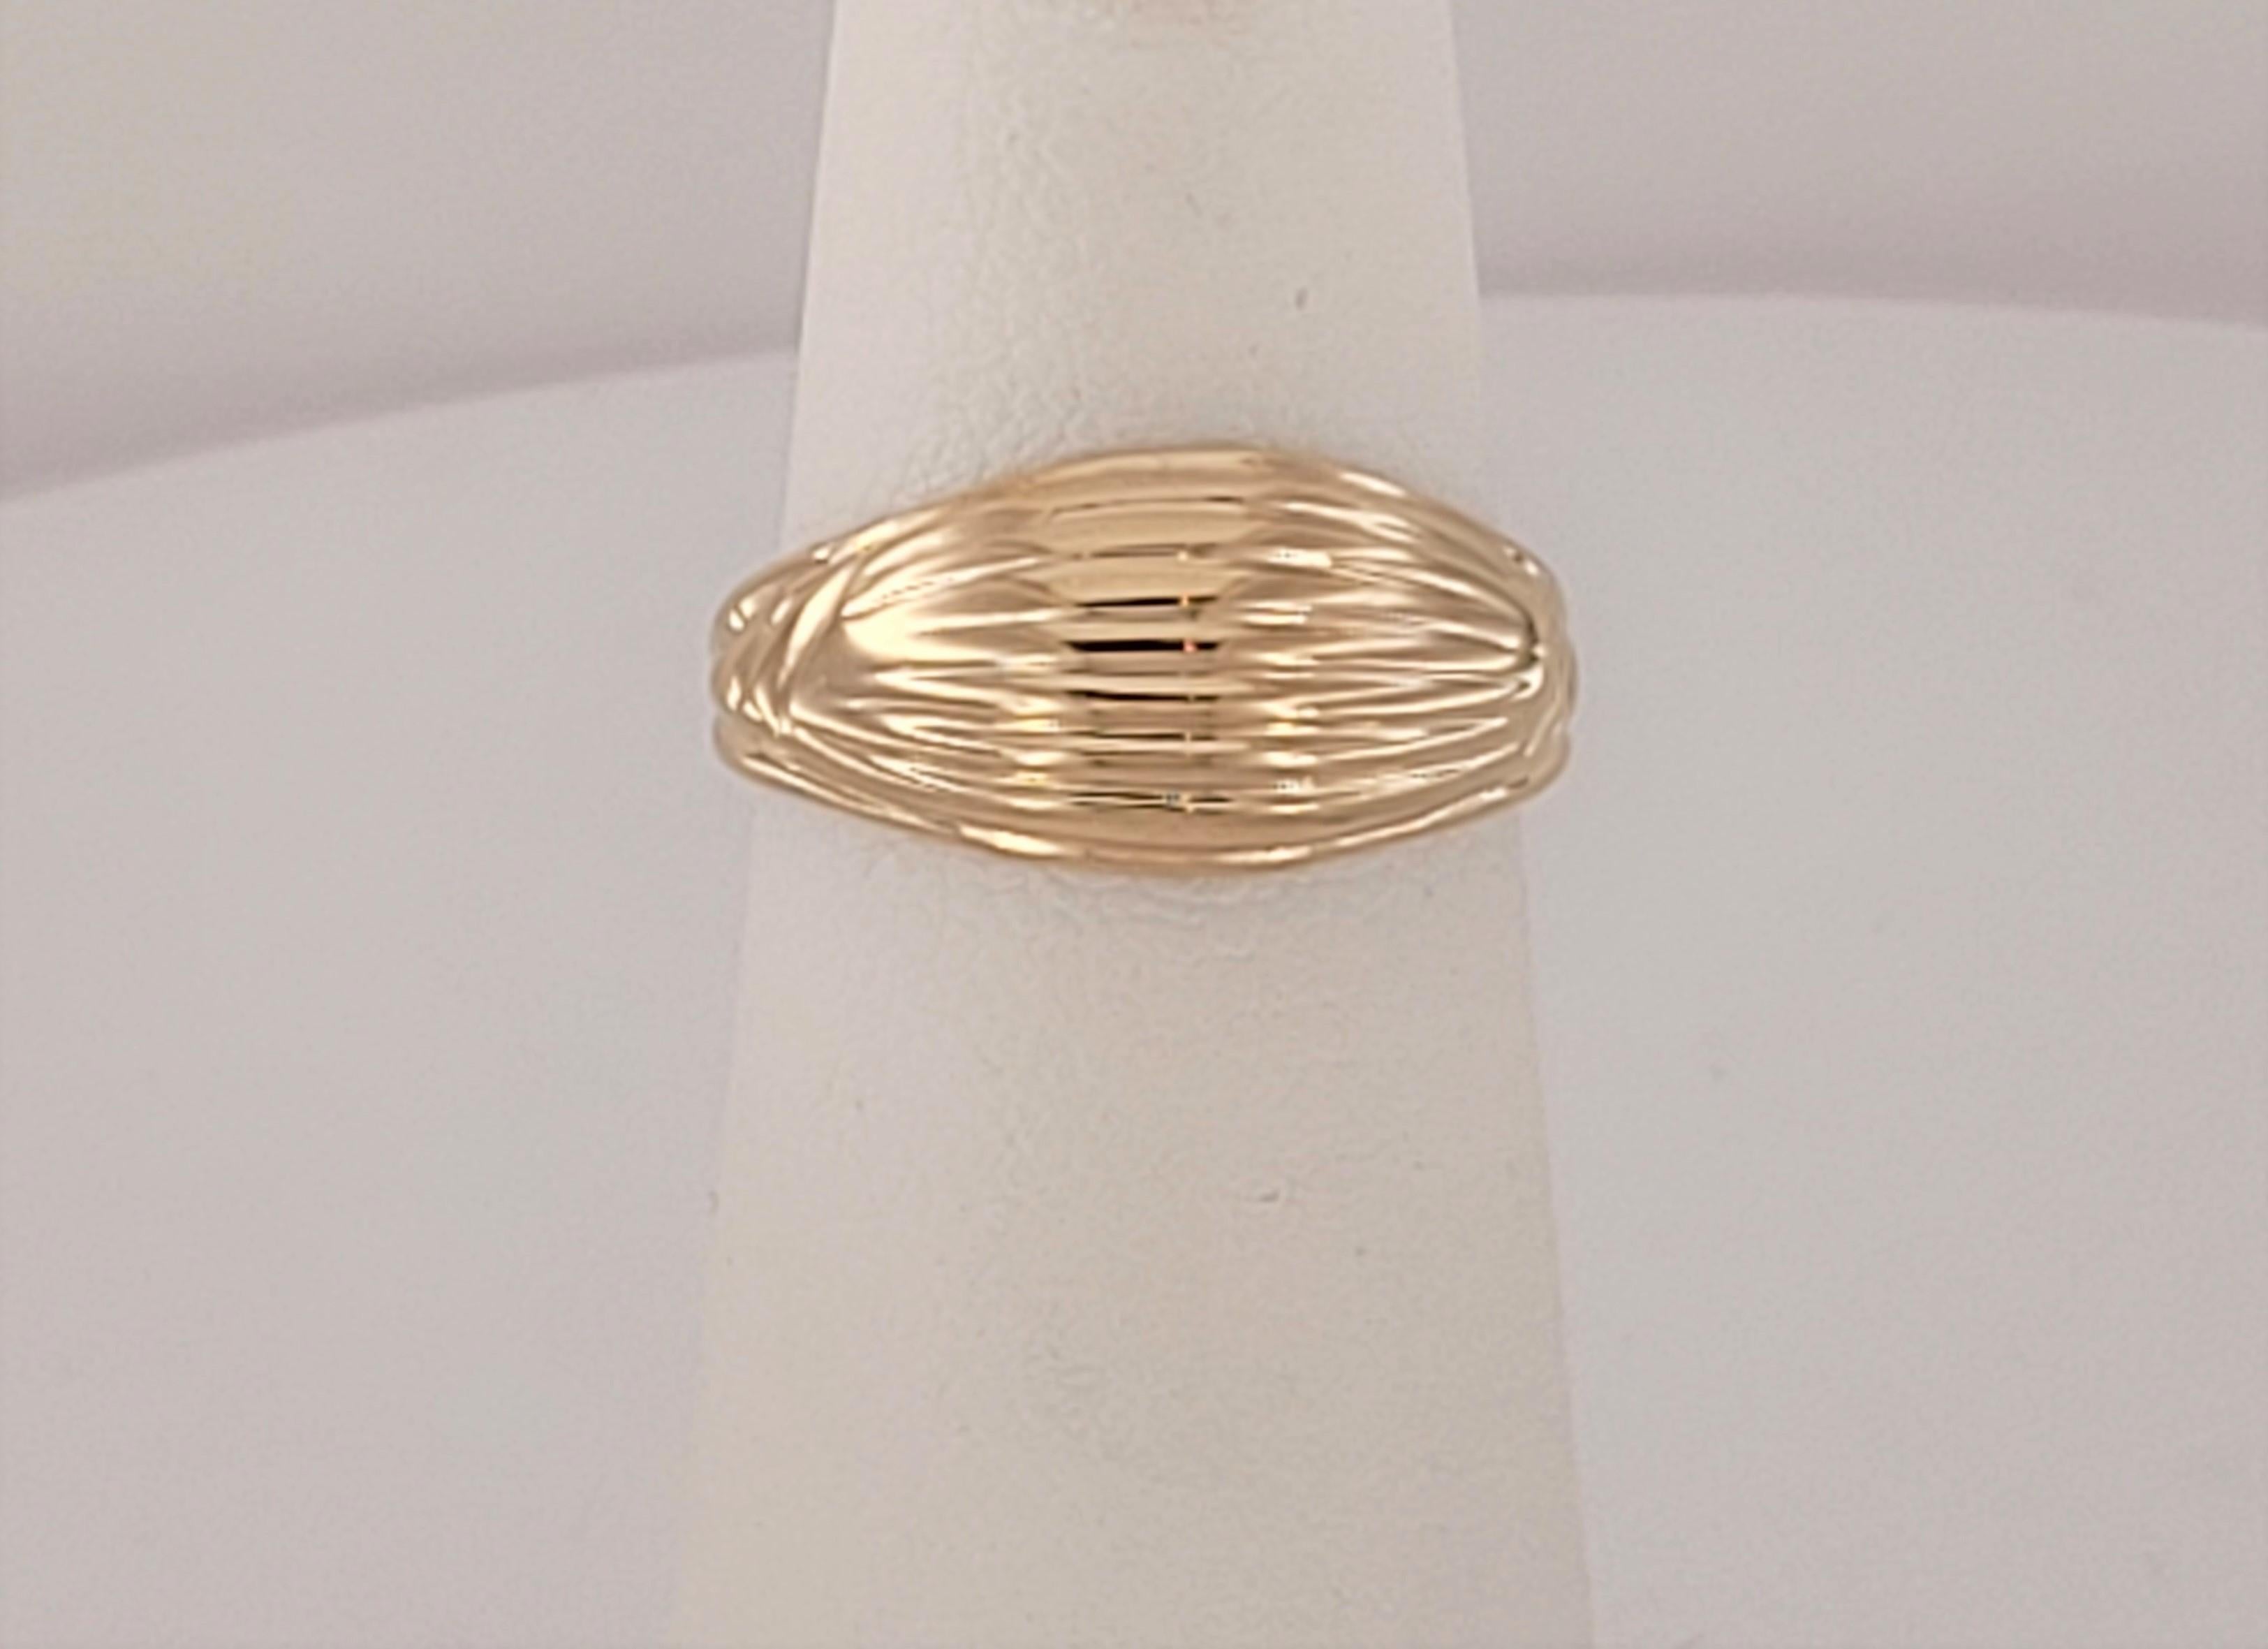 Marque  Tiffany & Co
Or jaune 14K
Taille de l'anneau 3.5
Couleur de l'anneau Jaune
Type de bague Vintage By 
Poids de l'anneau 3gr
L'anneau a entre 40 et 50 ans.